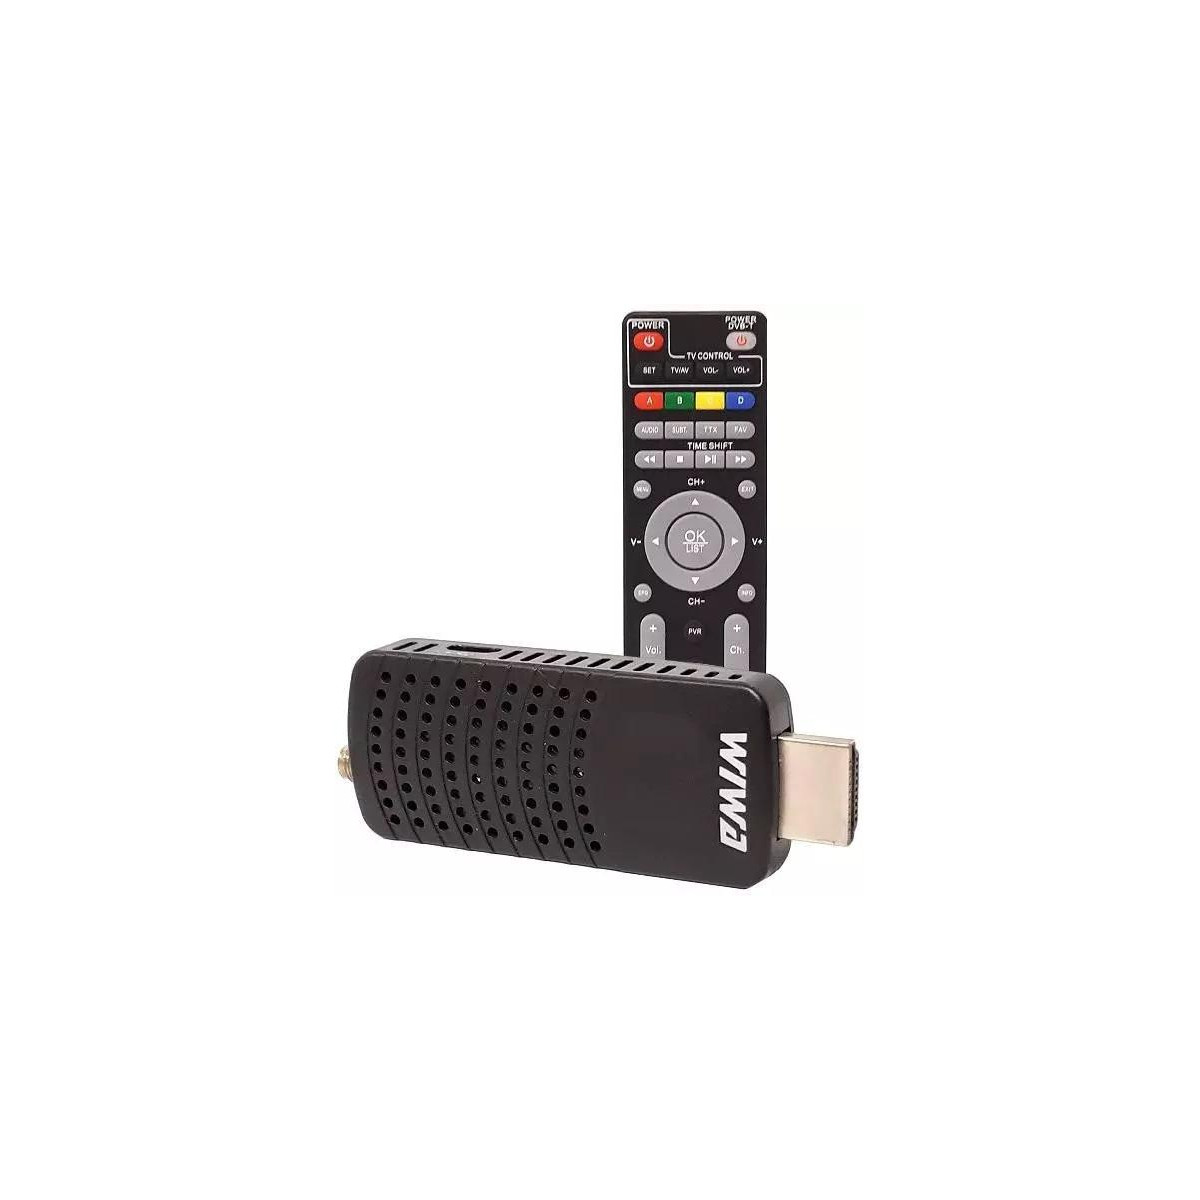 More about WIWA H.265 MINI DVB-T2 set top box